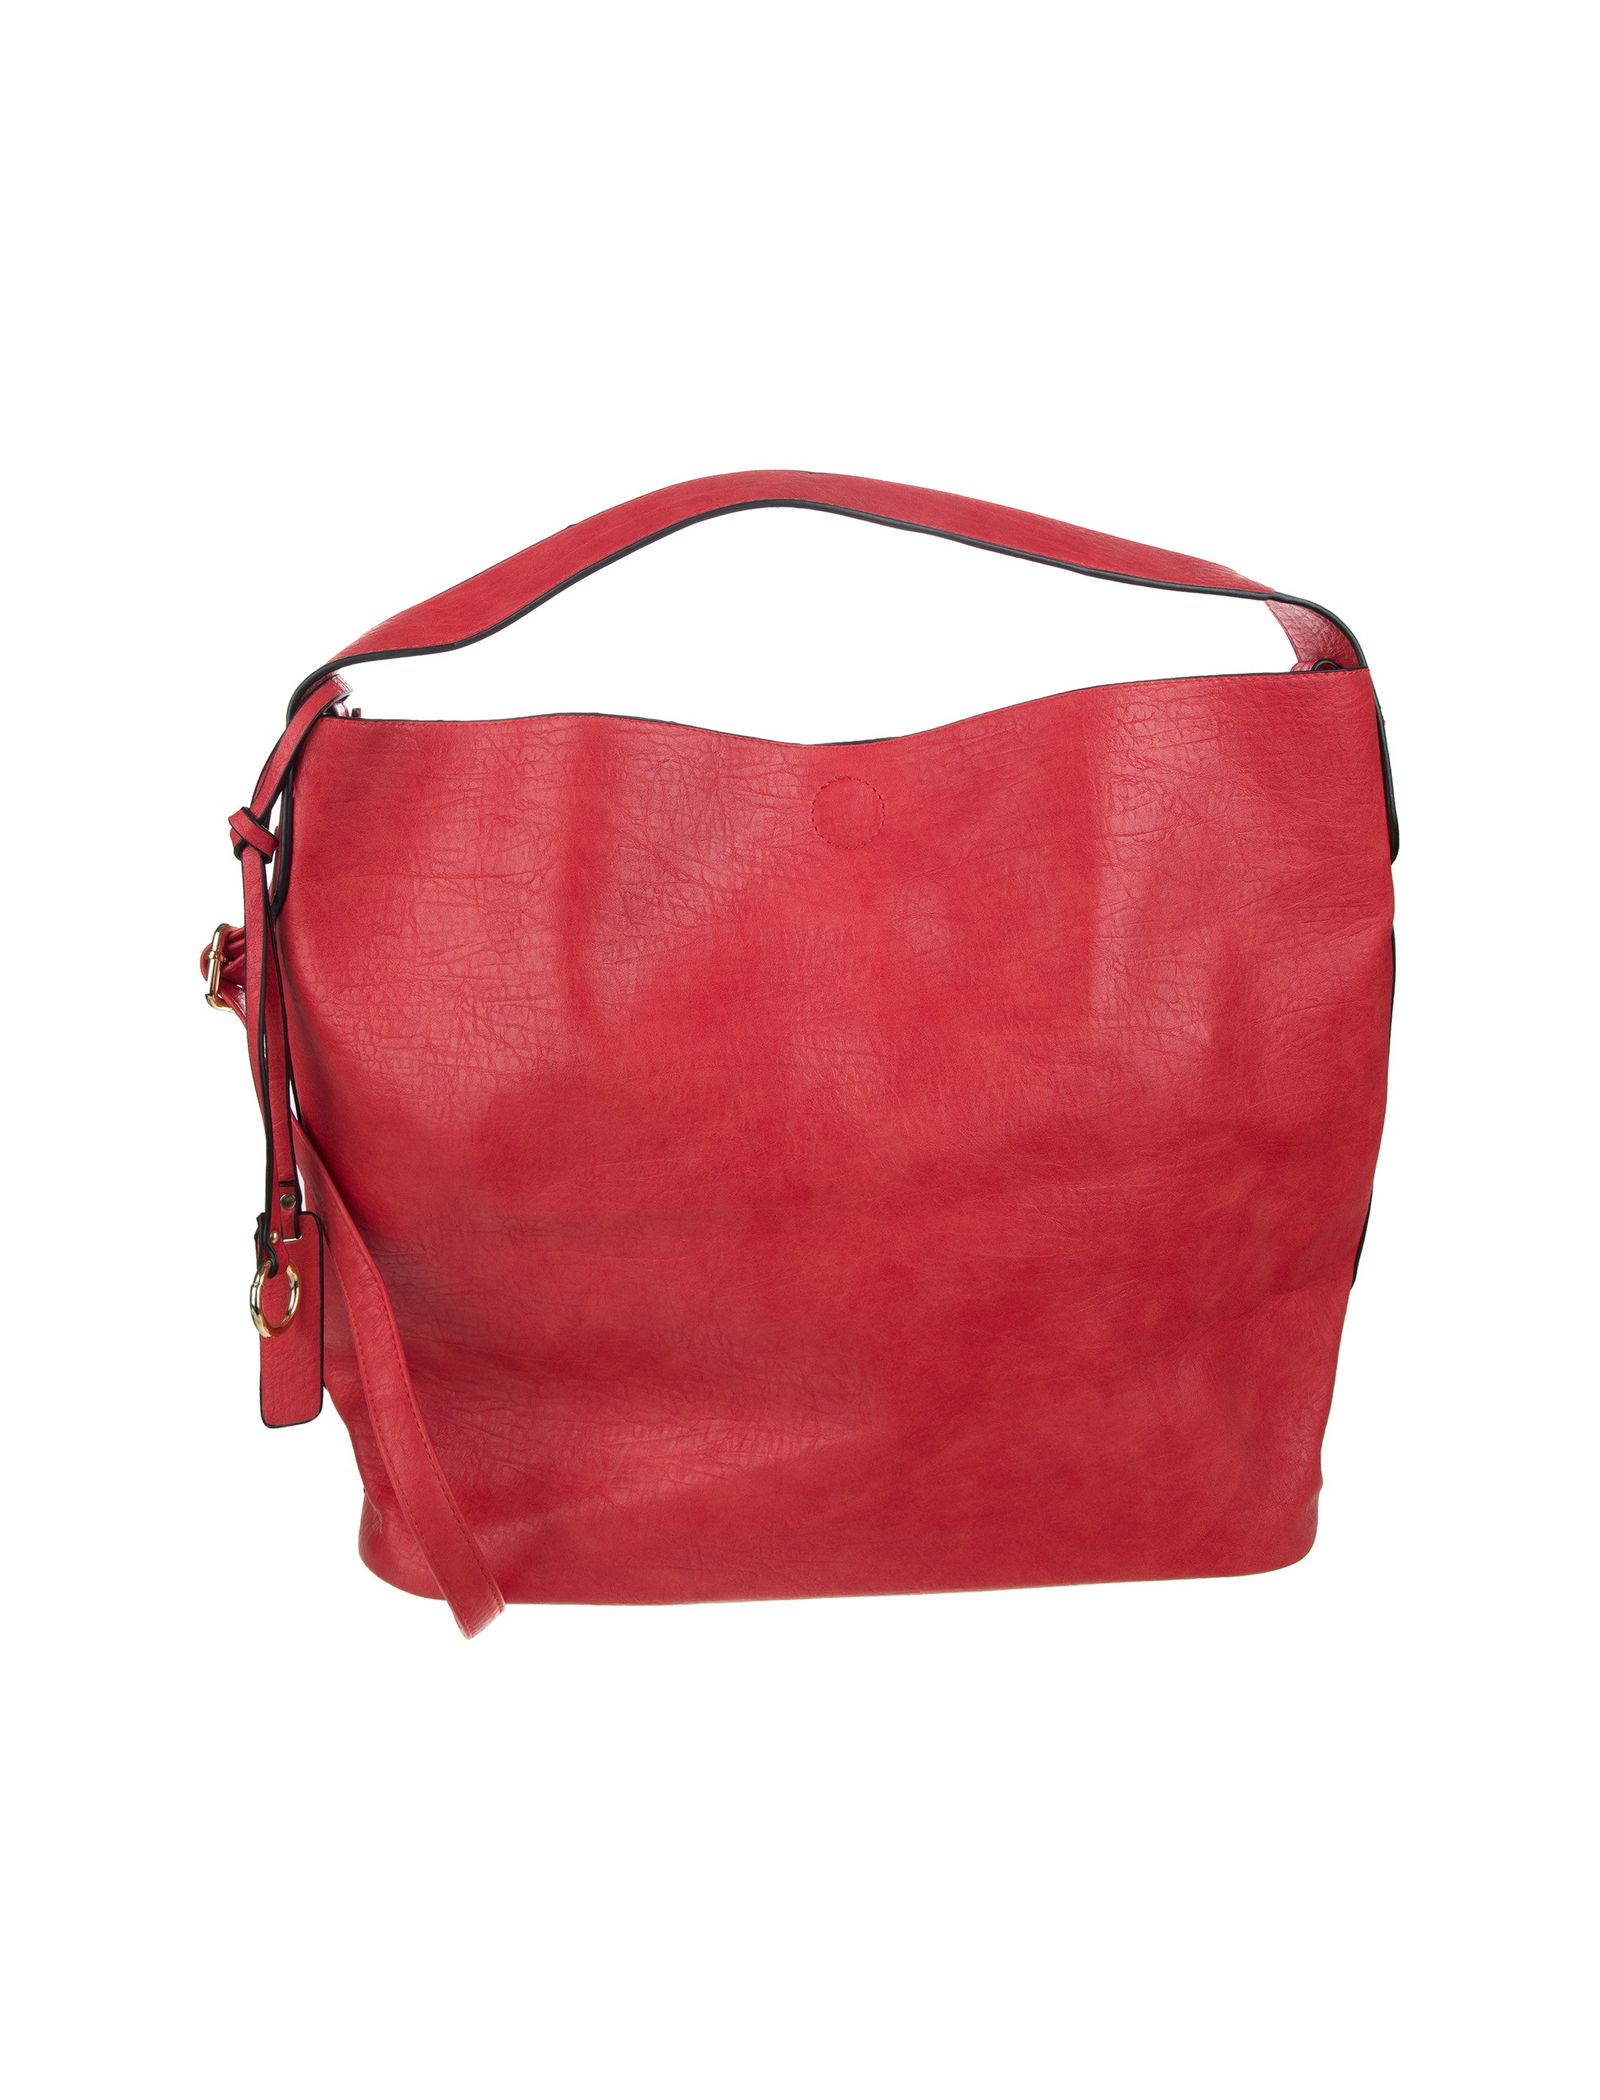 کیف دستی روزمره زنانه - دادلین تک سایز - قرمز - 3